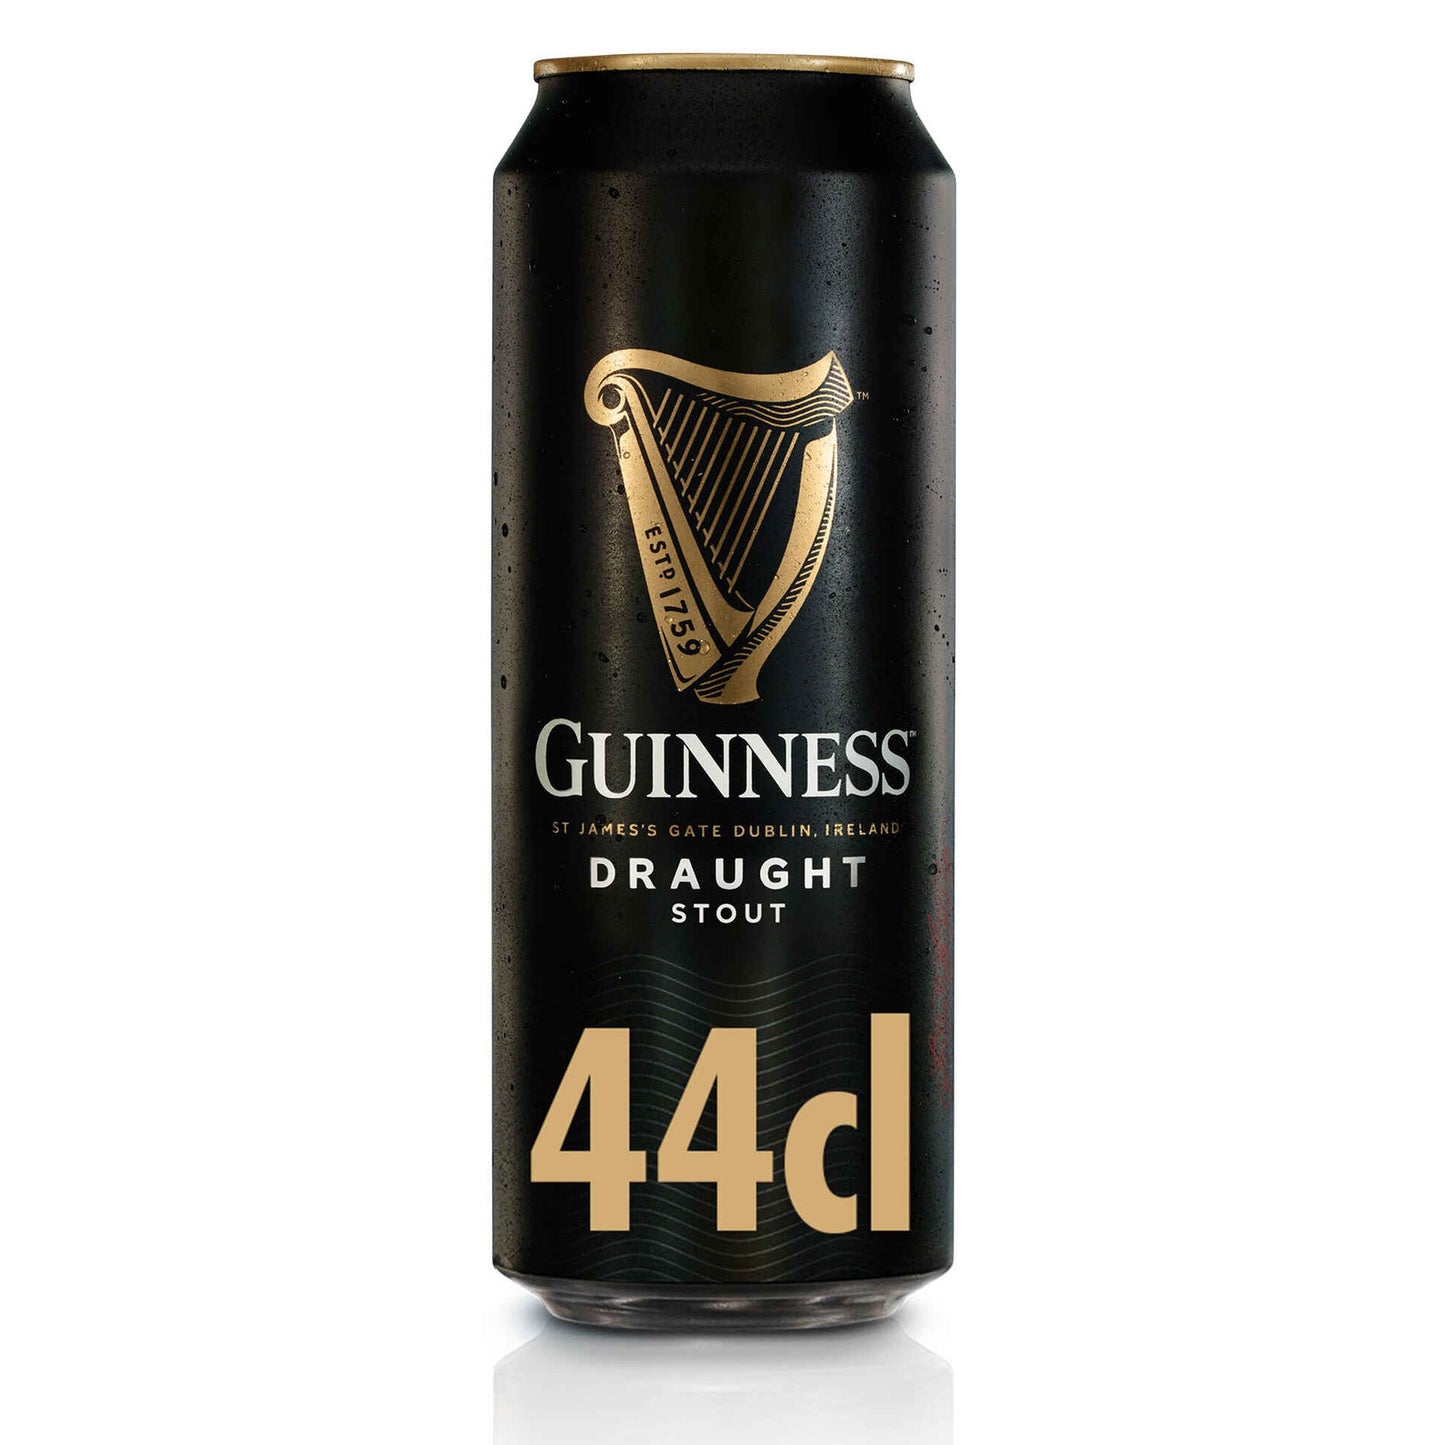 Guinness 44cl